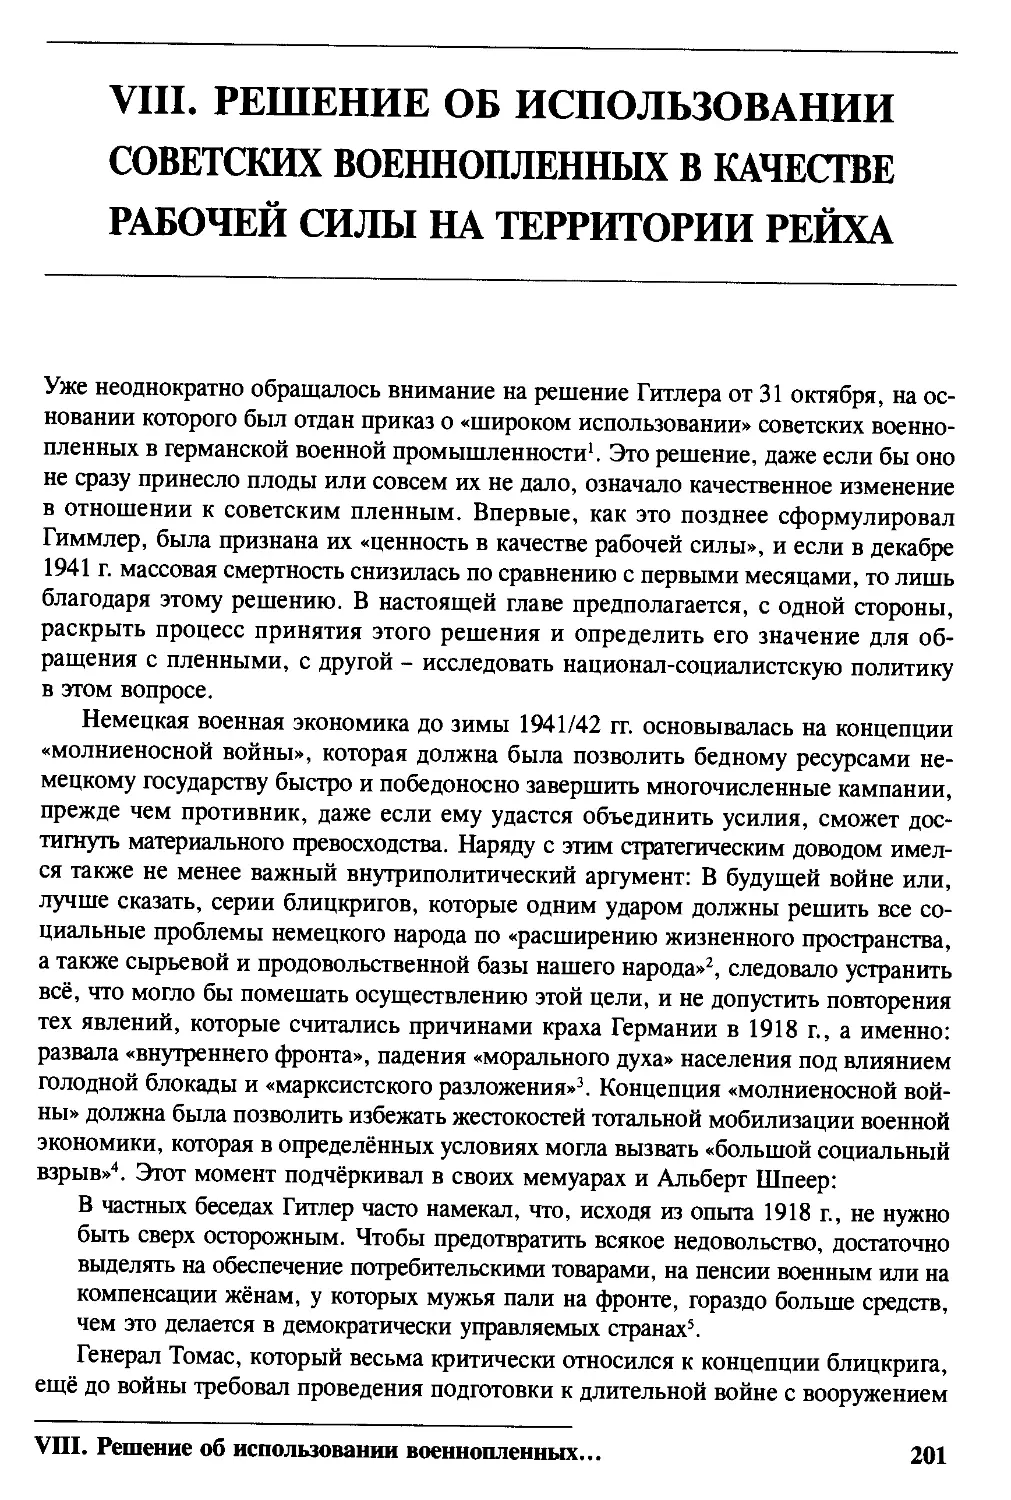 VIIL Решение об использовании советских военнопленных в качестве рабочей силы иа территории рейха